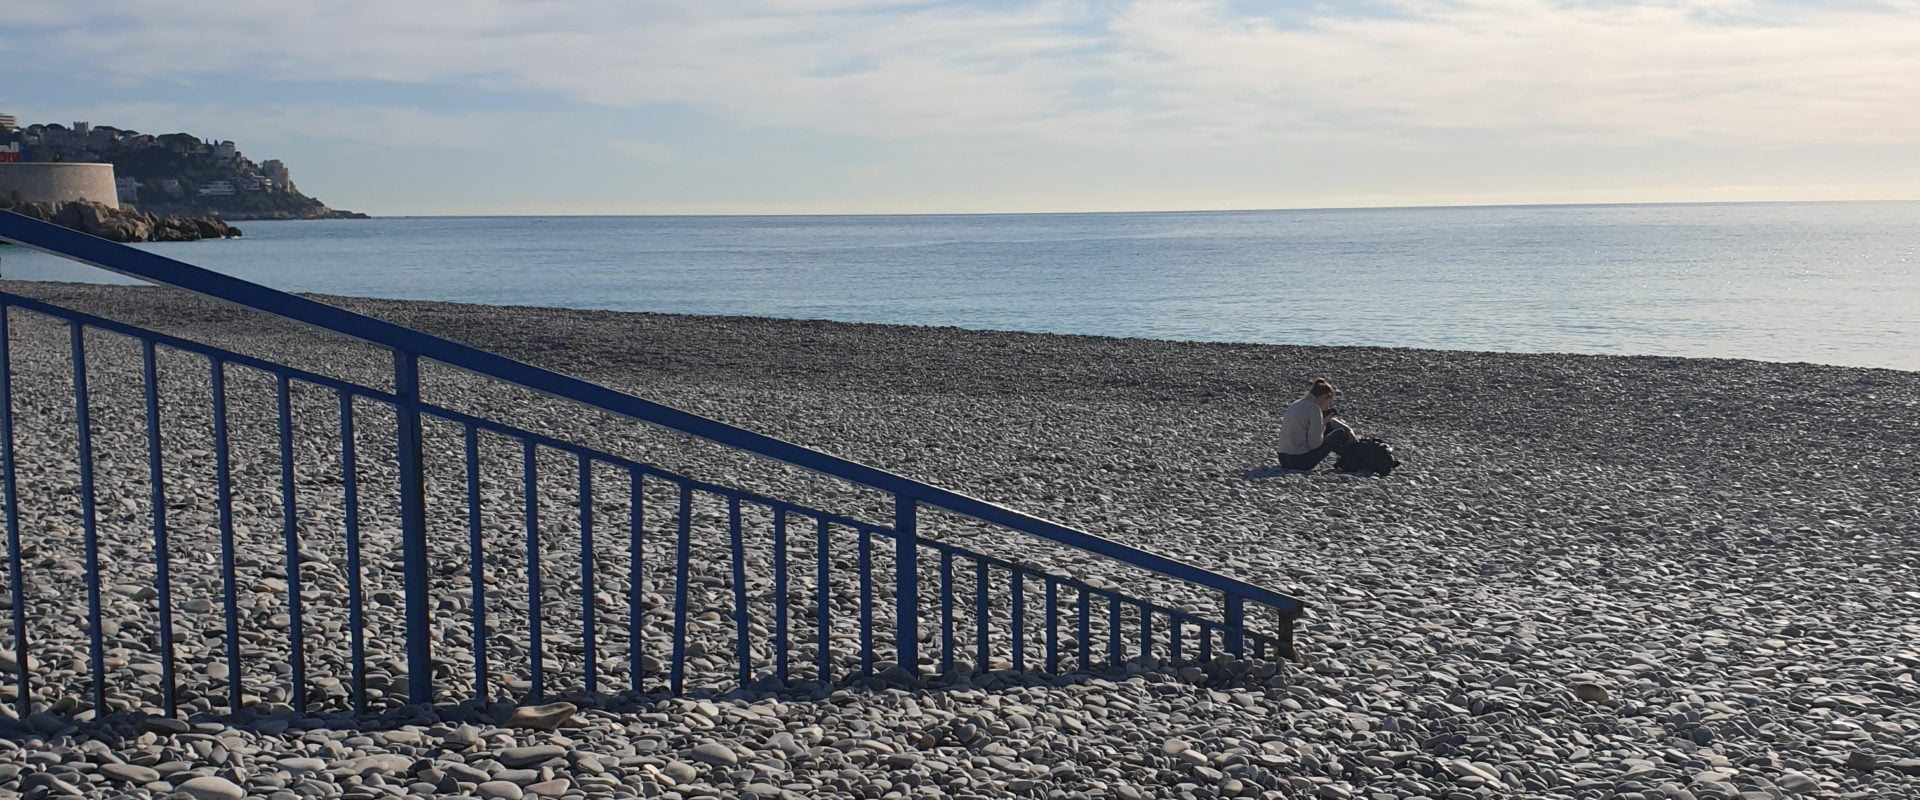 Wetter Nizza: Mit Steinen bedecktes Strandgeländer nach mediterraner Episode